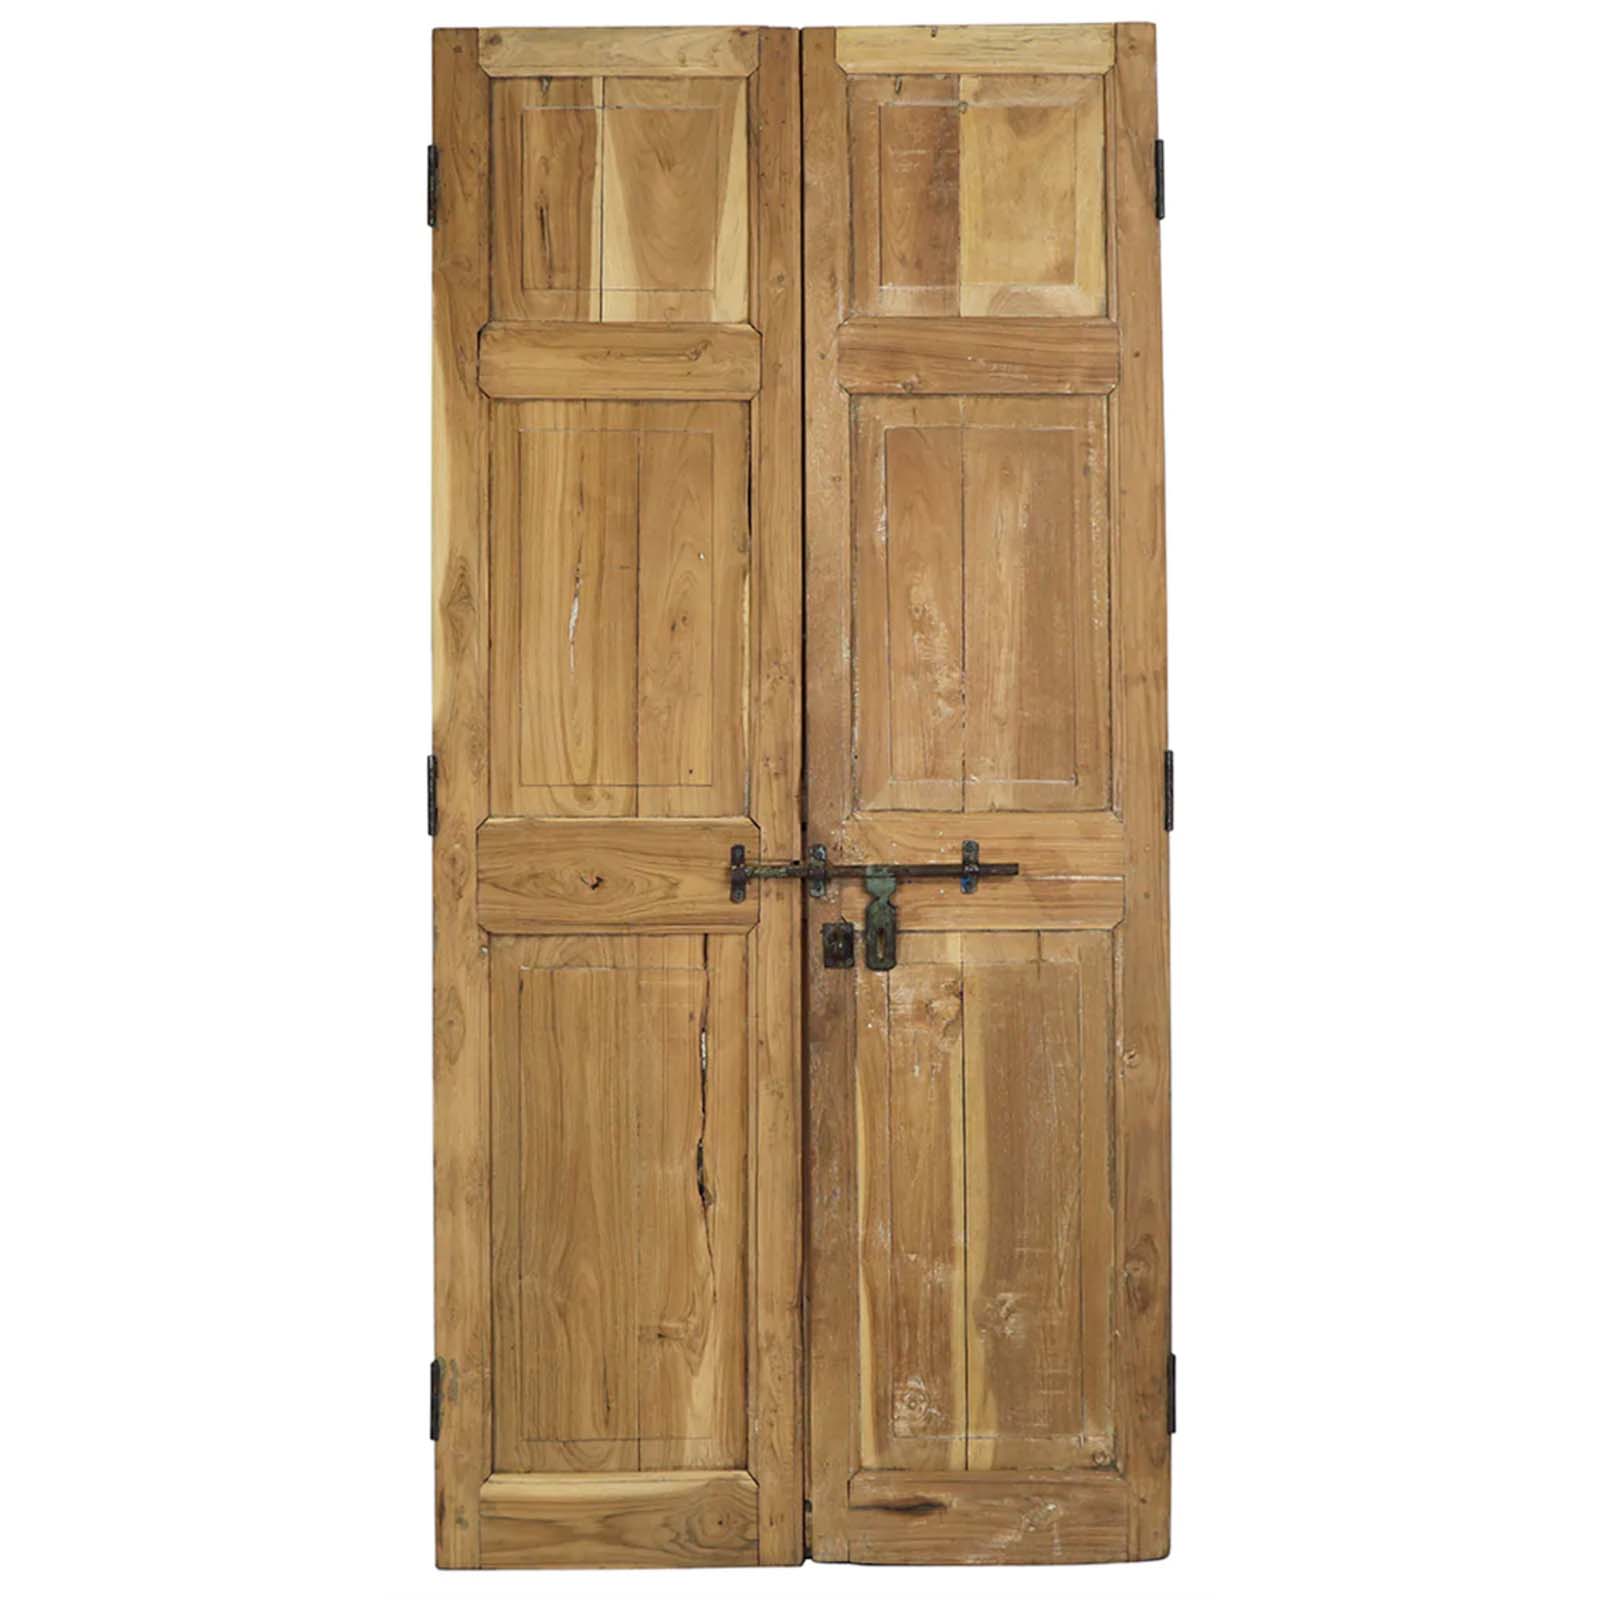 Pair of Antique Wooden Doors